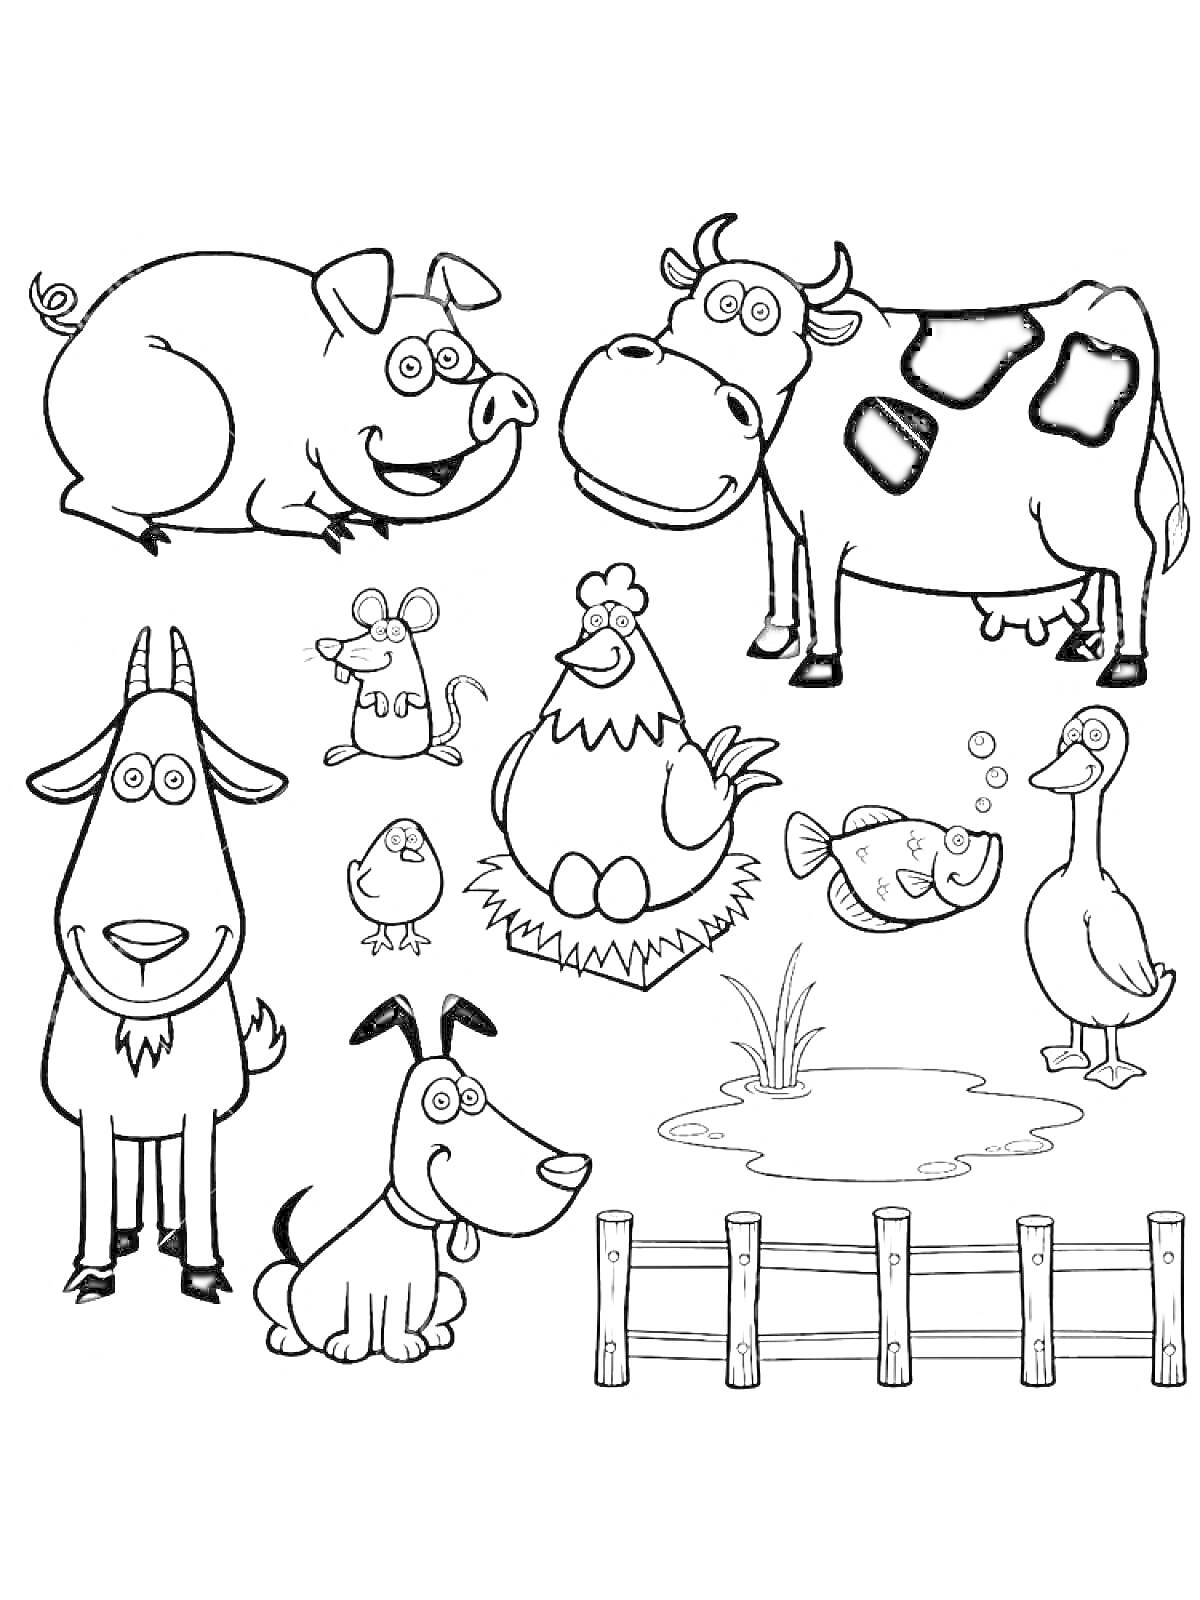 На раскраске изображено: Ферма, Корова, Козел, Утка, Мышь, Рыба, Собака, Пруд, Забор, Животные, Курицы, Свиньи, Цыплята